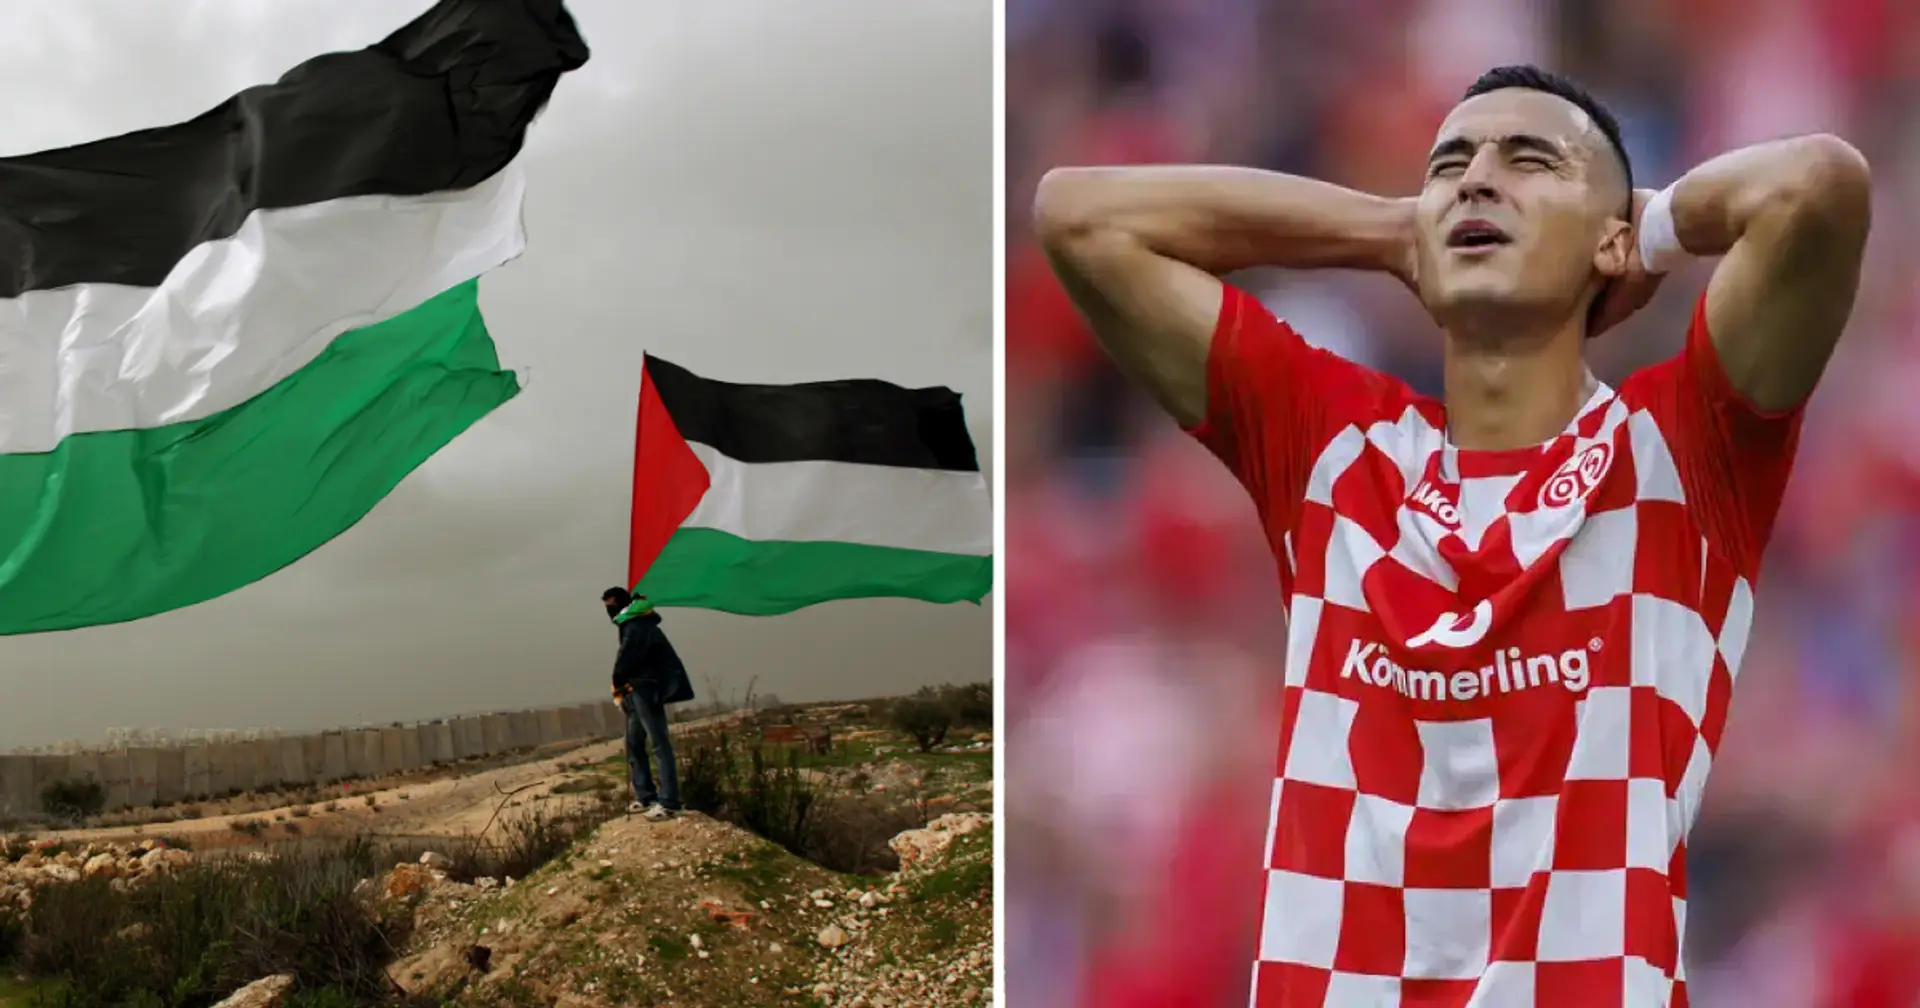 Mainz wird den Vertrag von El Ghazi, der Palästina unterstützt hat, auflösen - der Spieler betonte, dass er für Menschlichkeit gegenüber allen Opfern eintrete